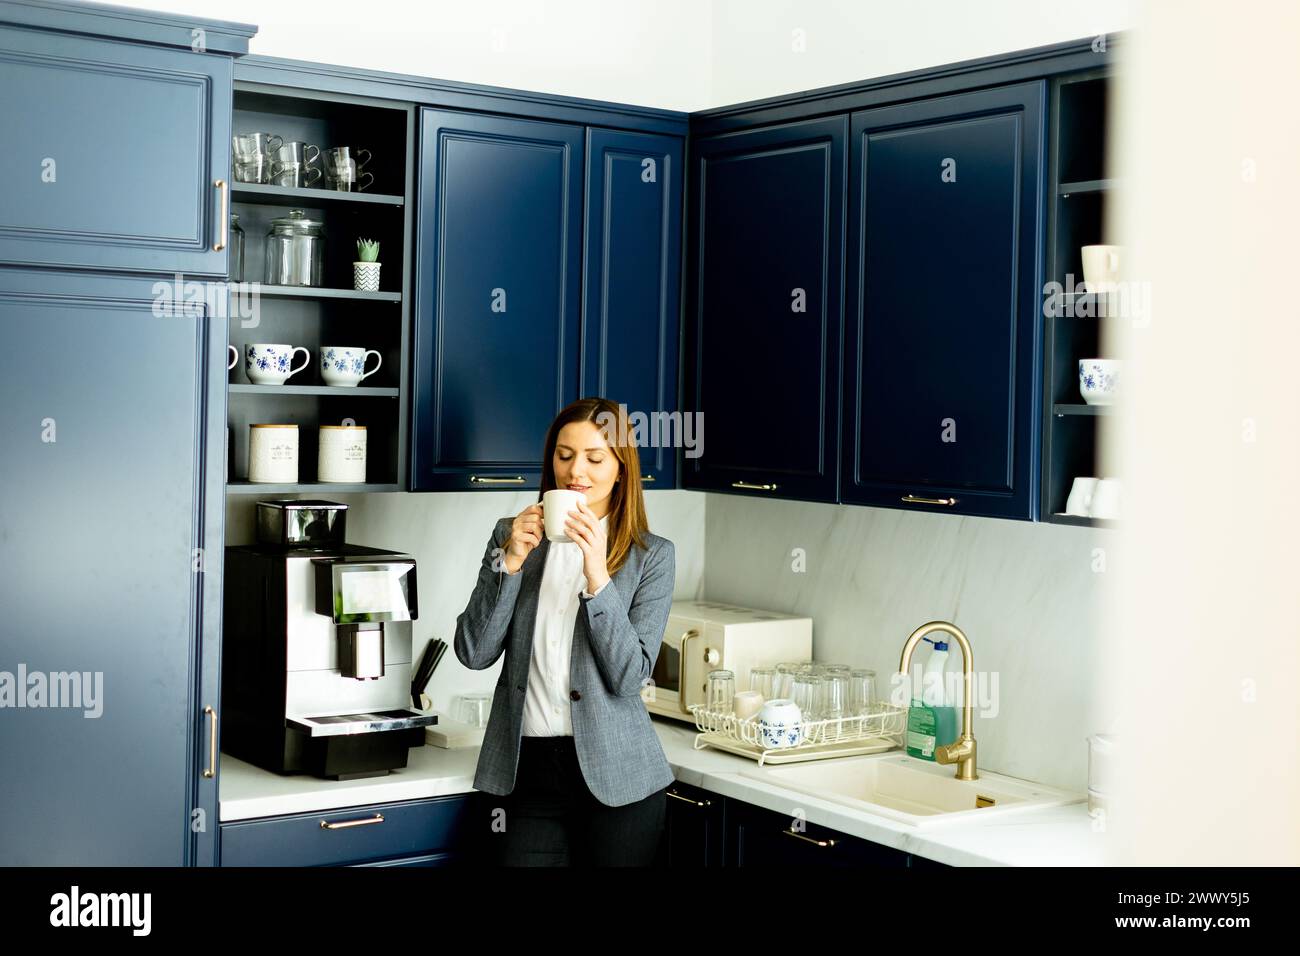 Eine lächelnde Frau in Geschäftskleidung, die eine Kaffeetasse hält und in einer stilvollen blauen Küche eine entspannende Pause einlegt. Stockfoto